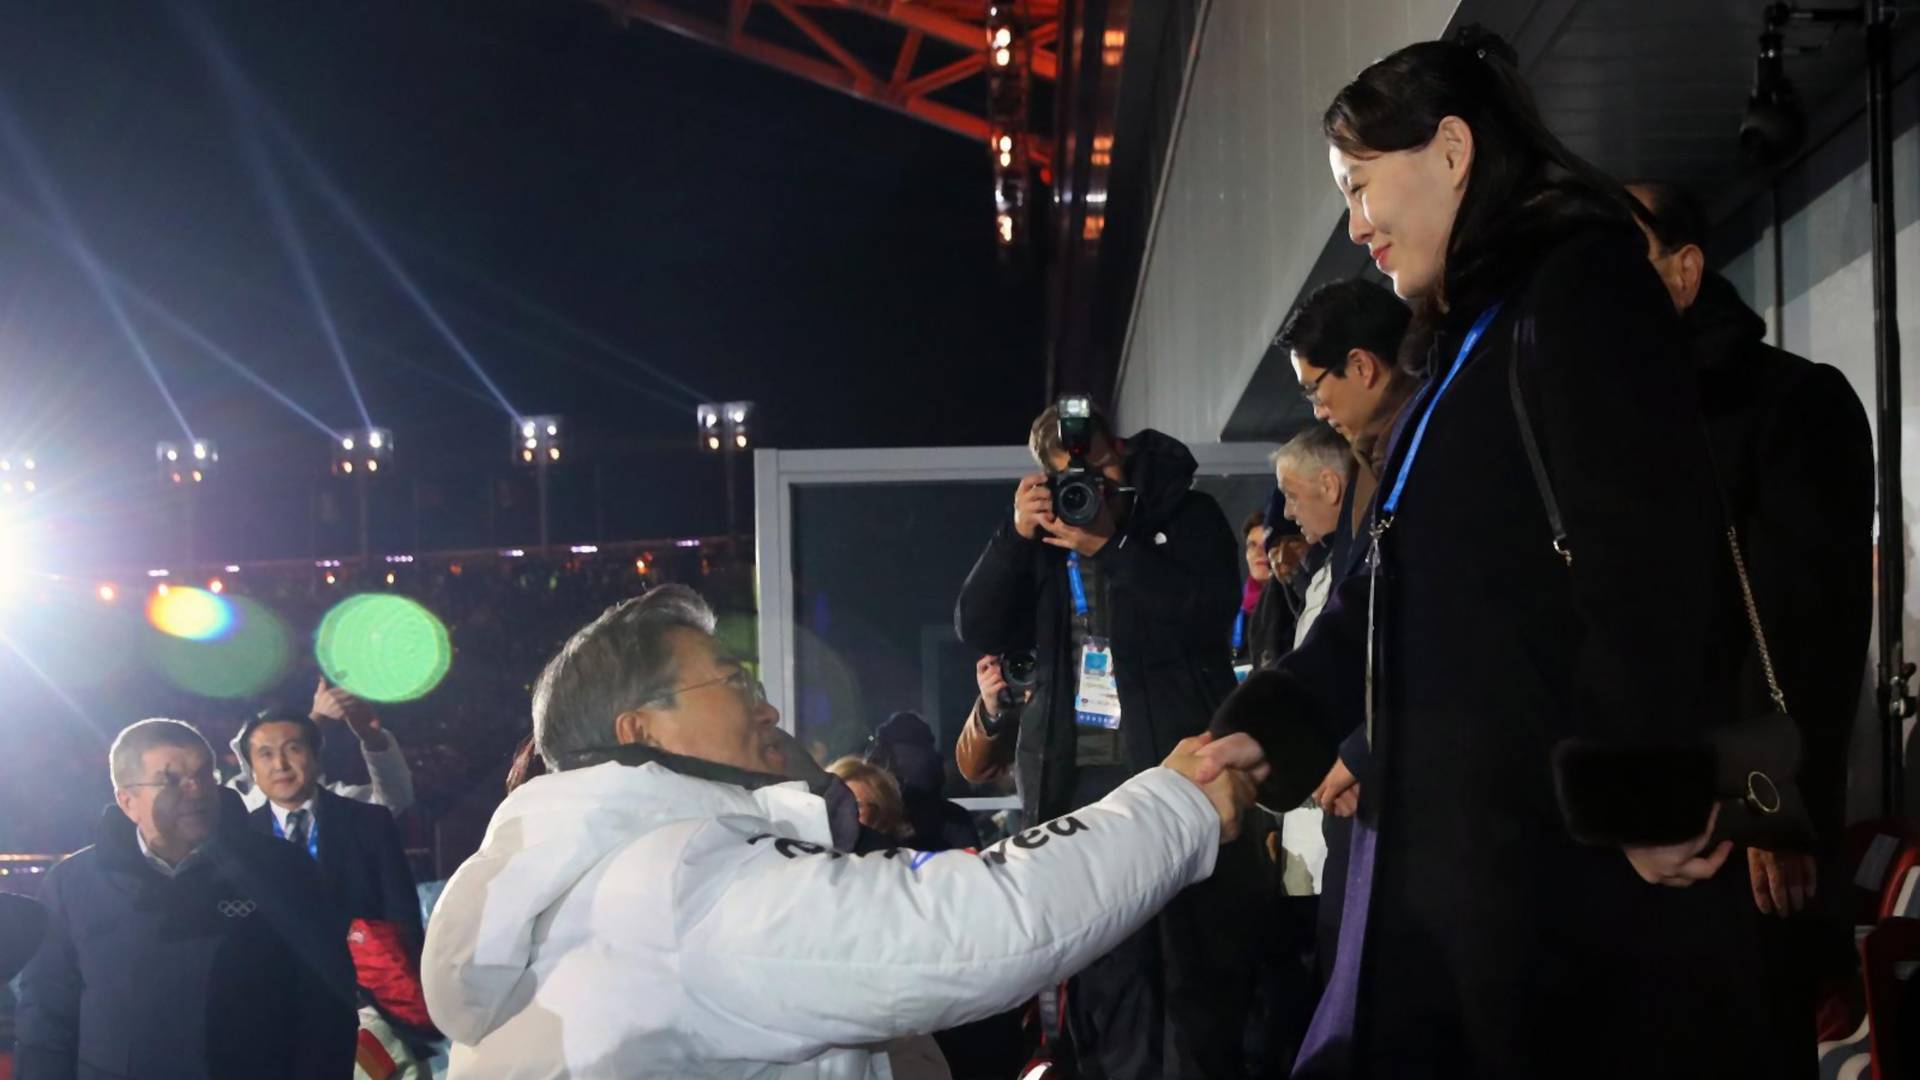 Sestra Kim Džong Una je s razlogom glavna zvezda Igara u Južnoj Koreji